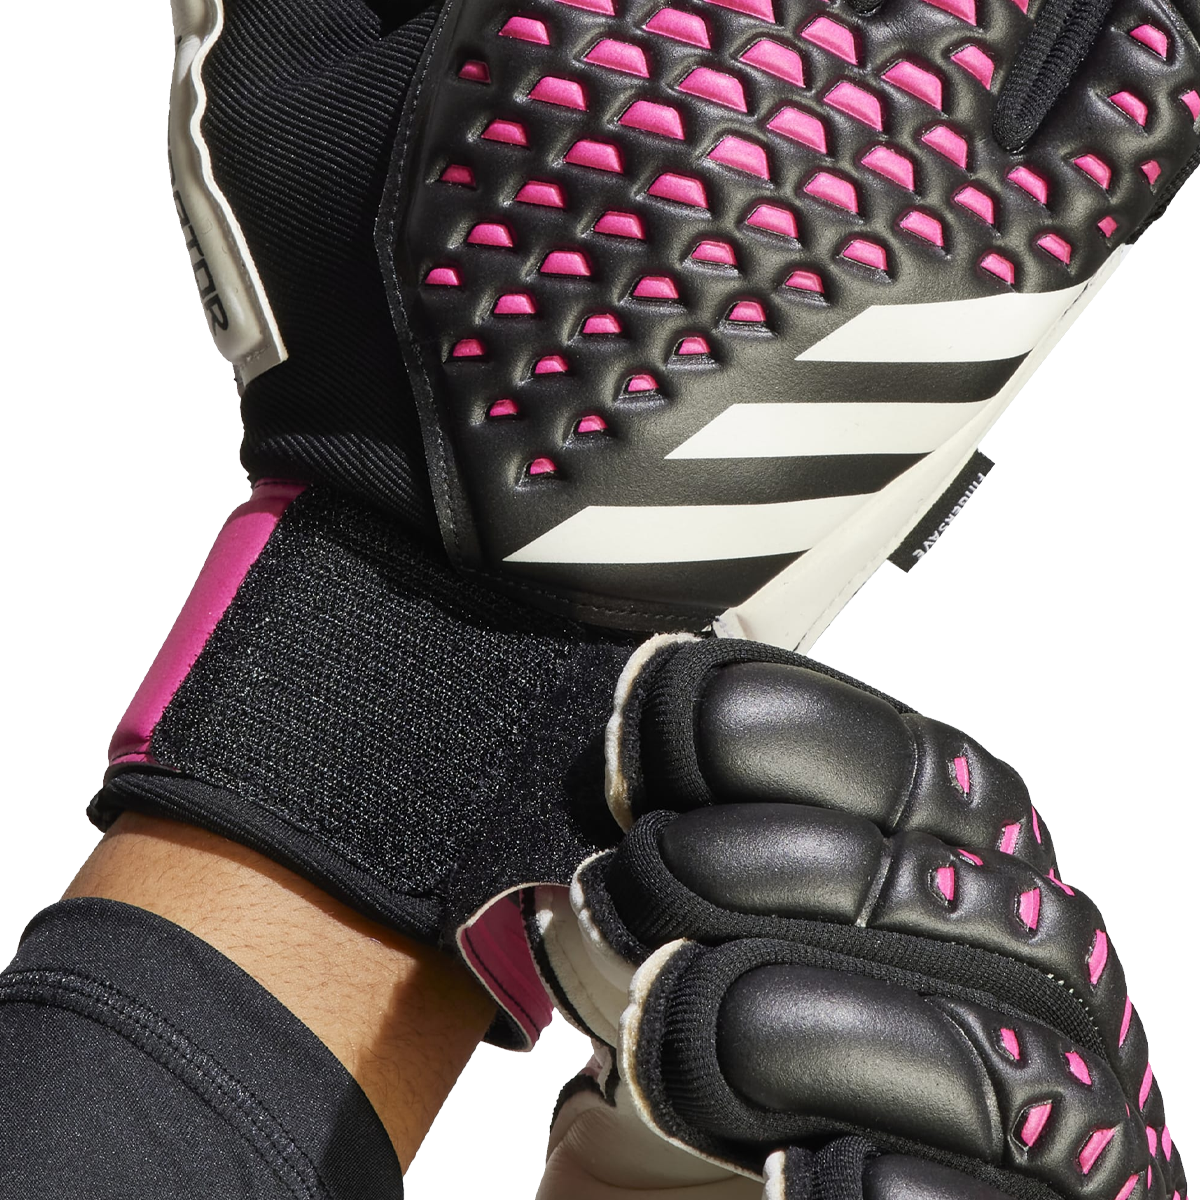 Adidas Predator Match Fingersave Gloves Solar Orange 7